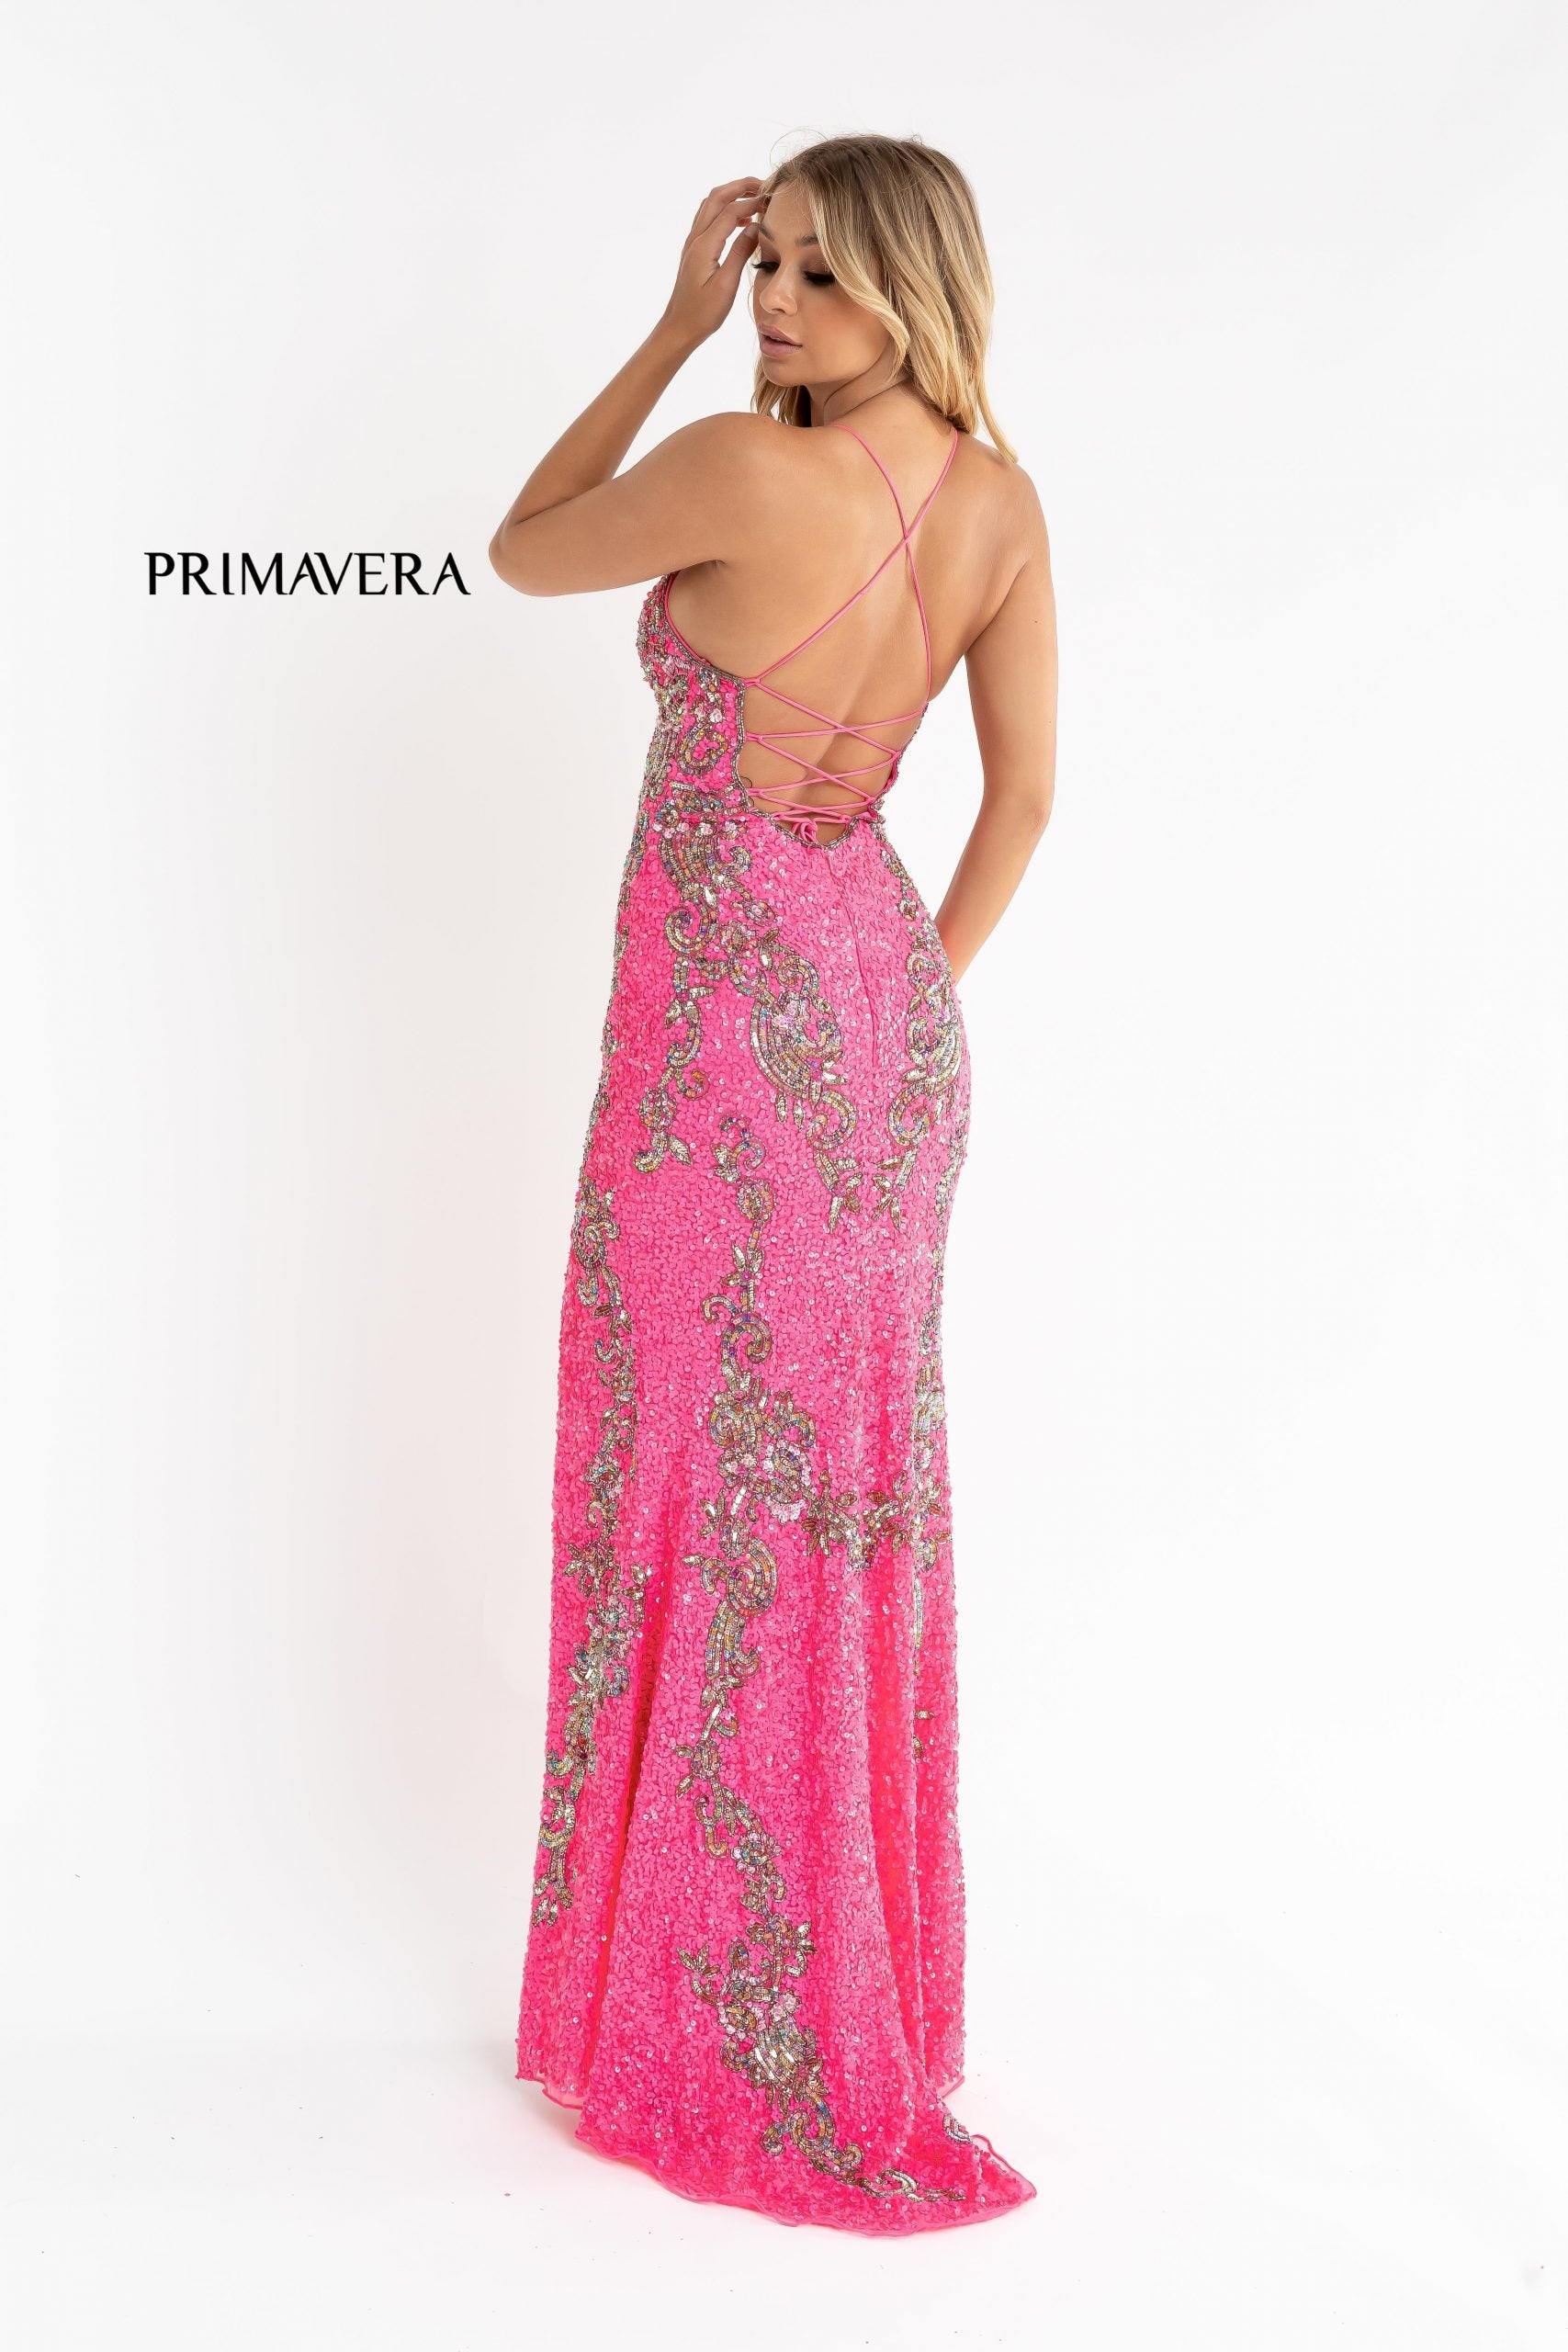 Primavera-couture-3211-NEON-PINK-prom-dress-back-v-neckline-floral-sequins-lace-up-tie-back-slit